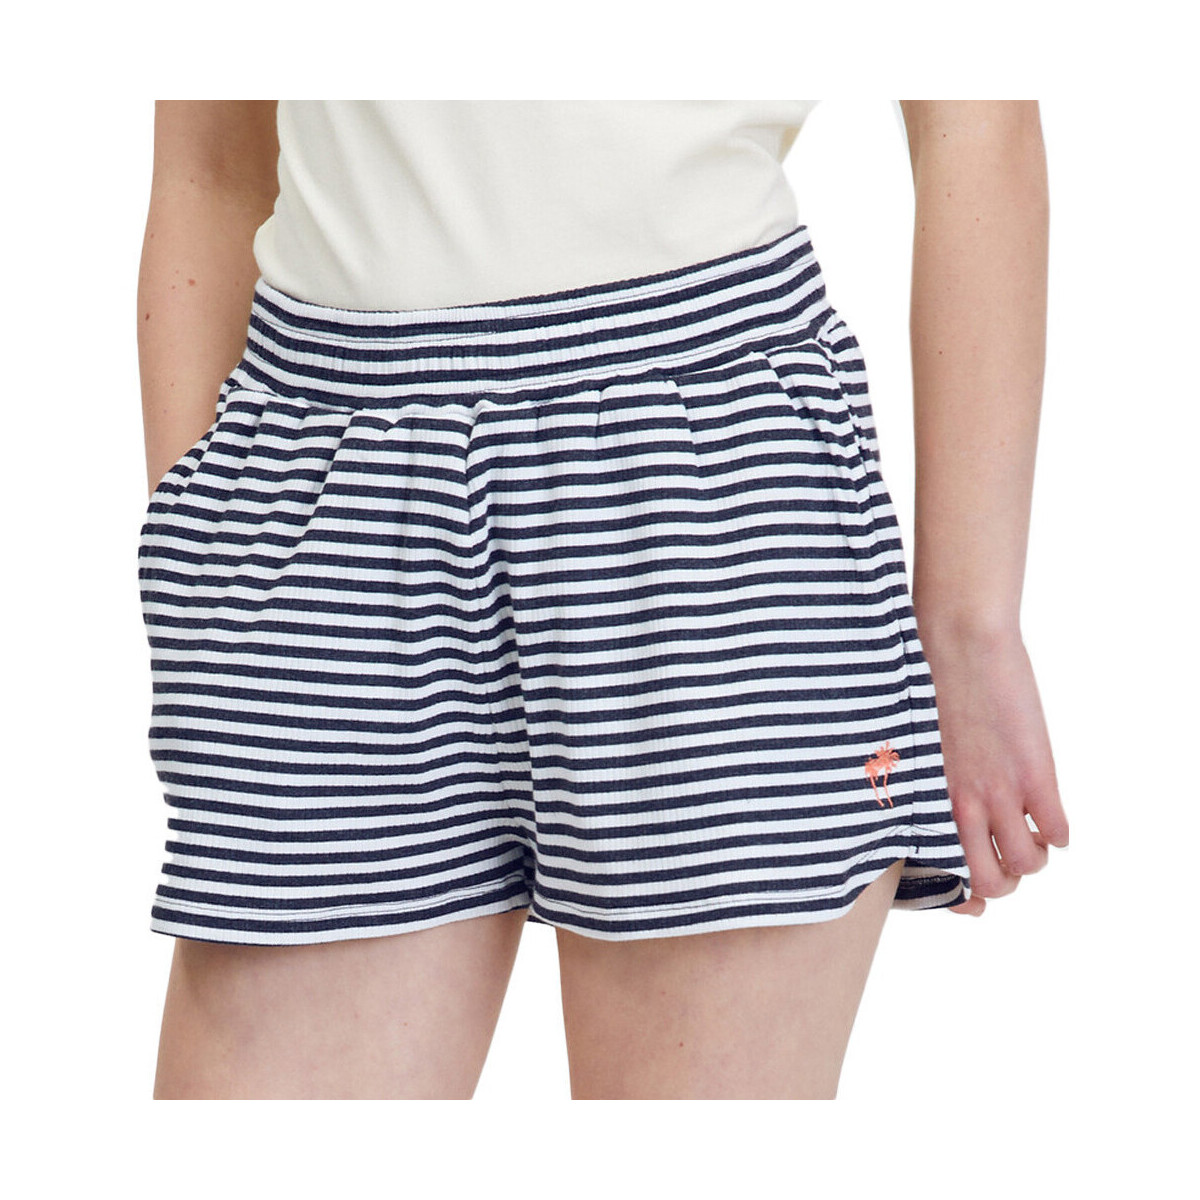 Textil Mulher Shorts / Bermudas O'neill  Branco